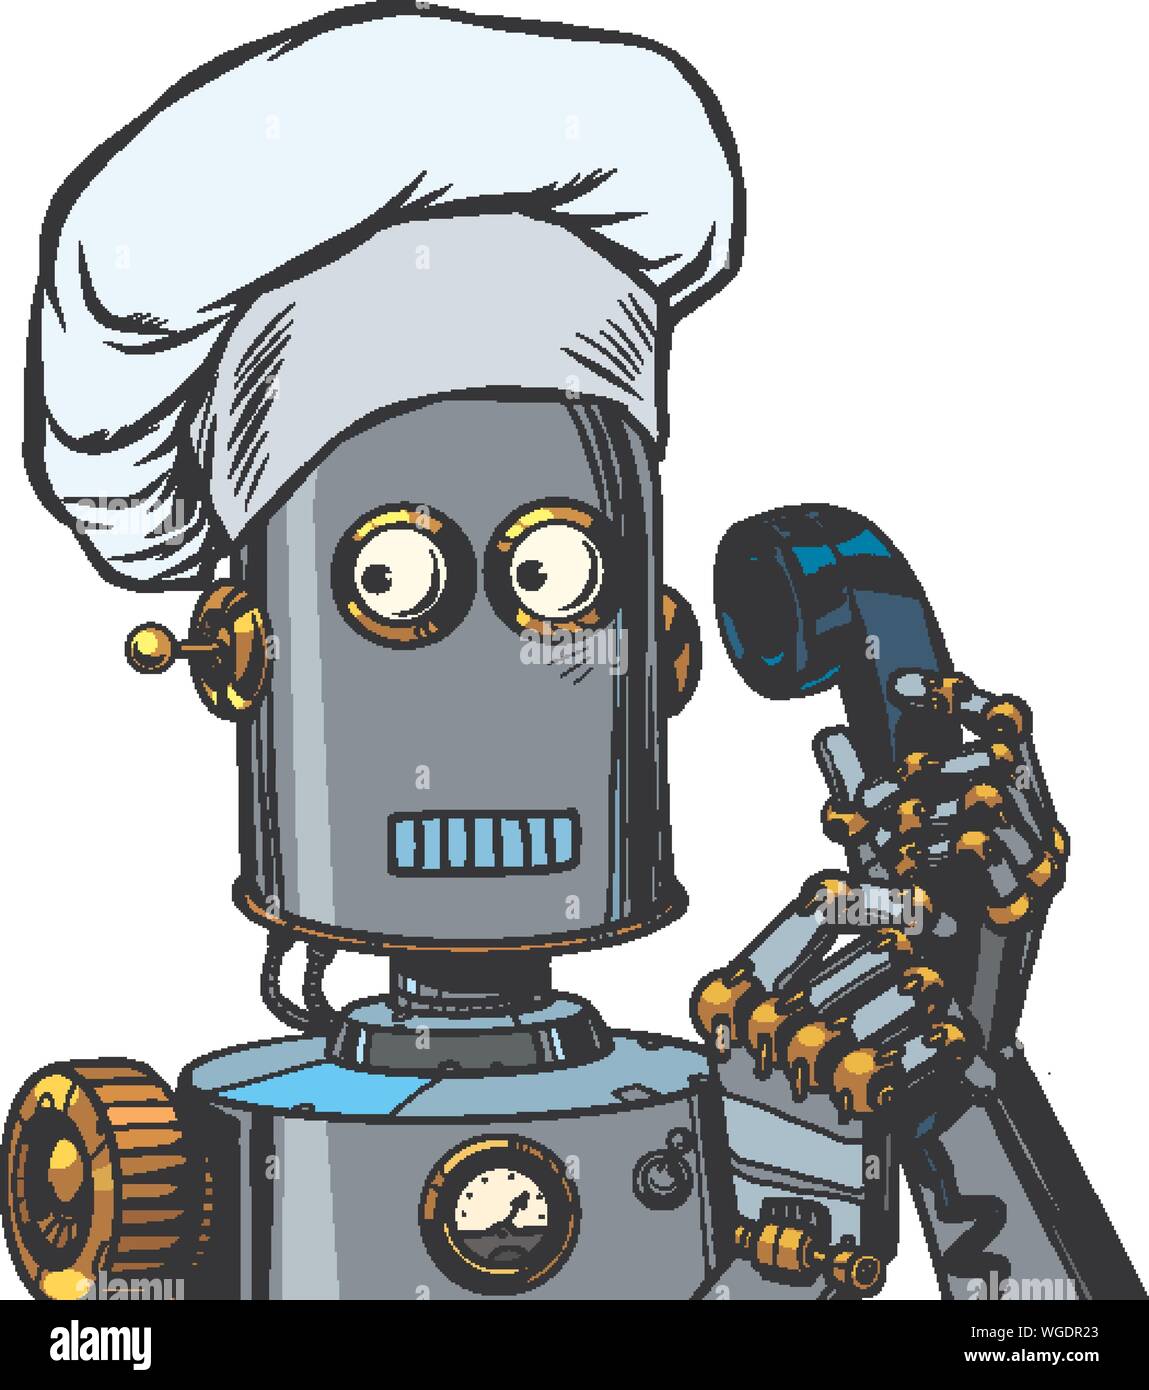 Der Roboter nimmt die Bestellung Menü kochen, essen. Pop Art retro Vektor illustration Zeichnung Stock Vektor